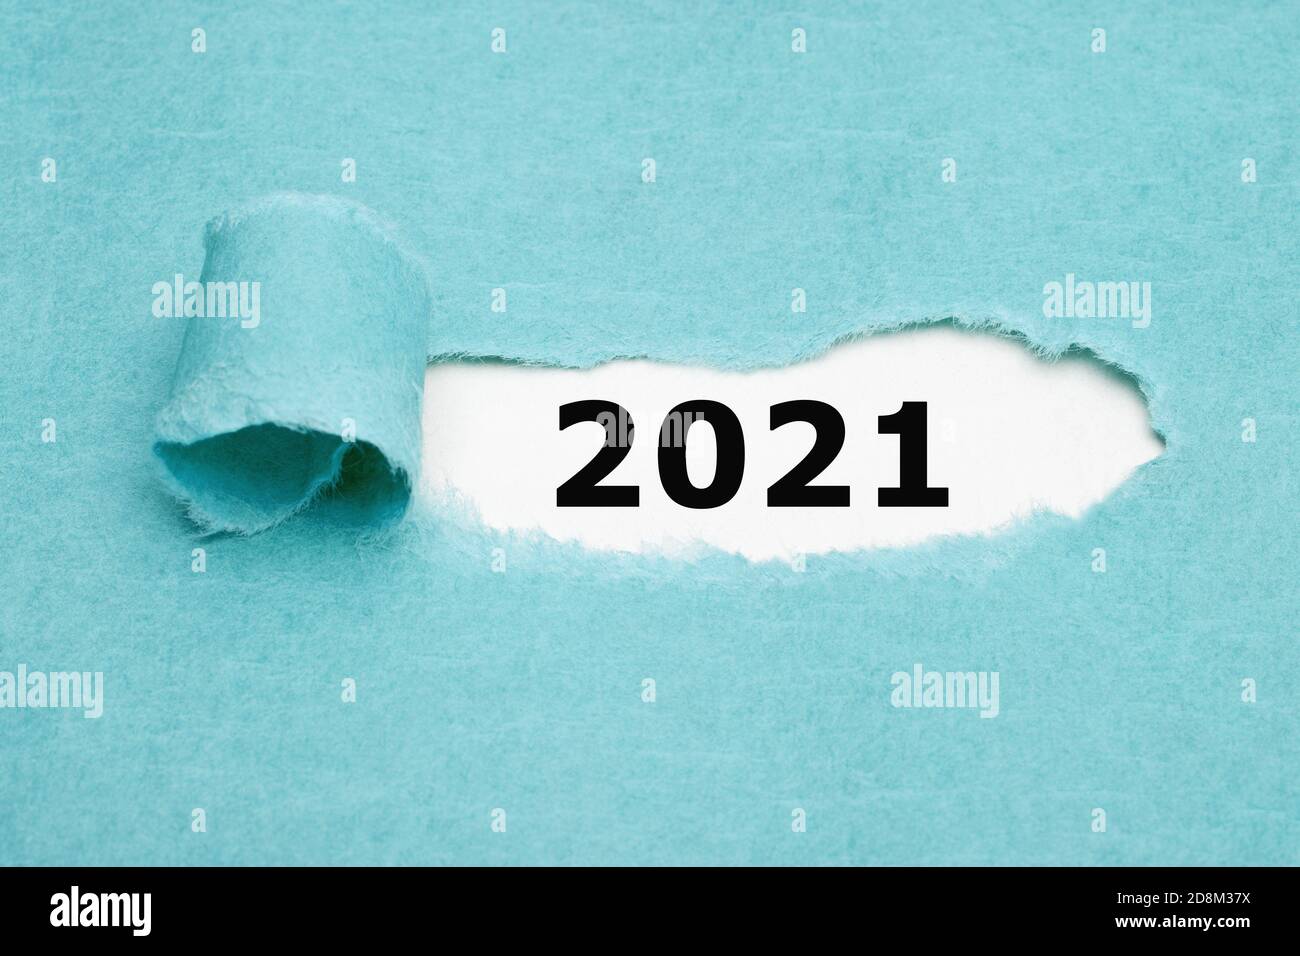 Les numéros imprimés 2021 apparaissent derrière du papier bleu déchiré. Concept de début d'année. Banque D'Images